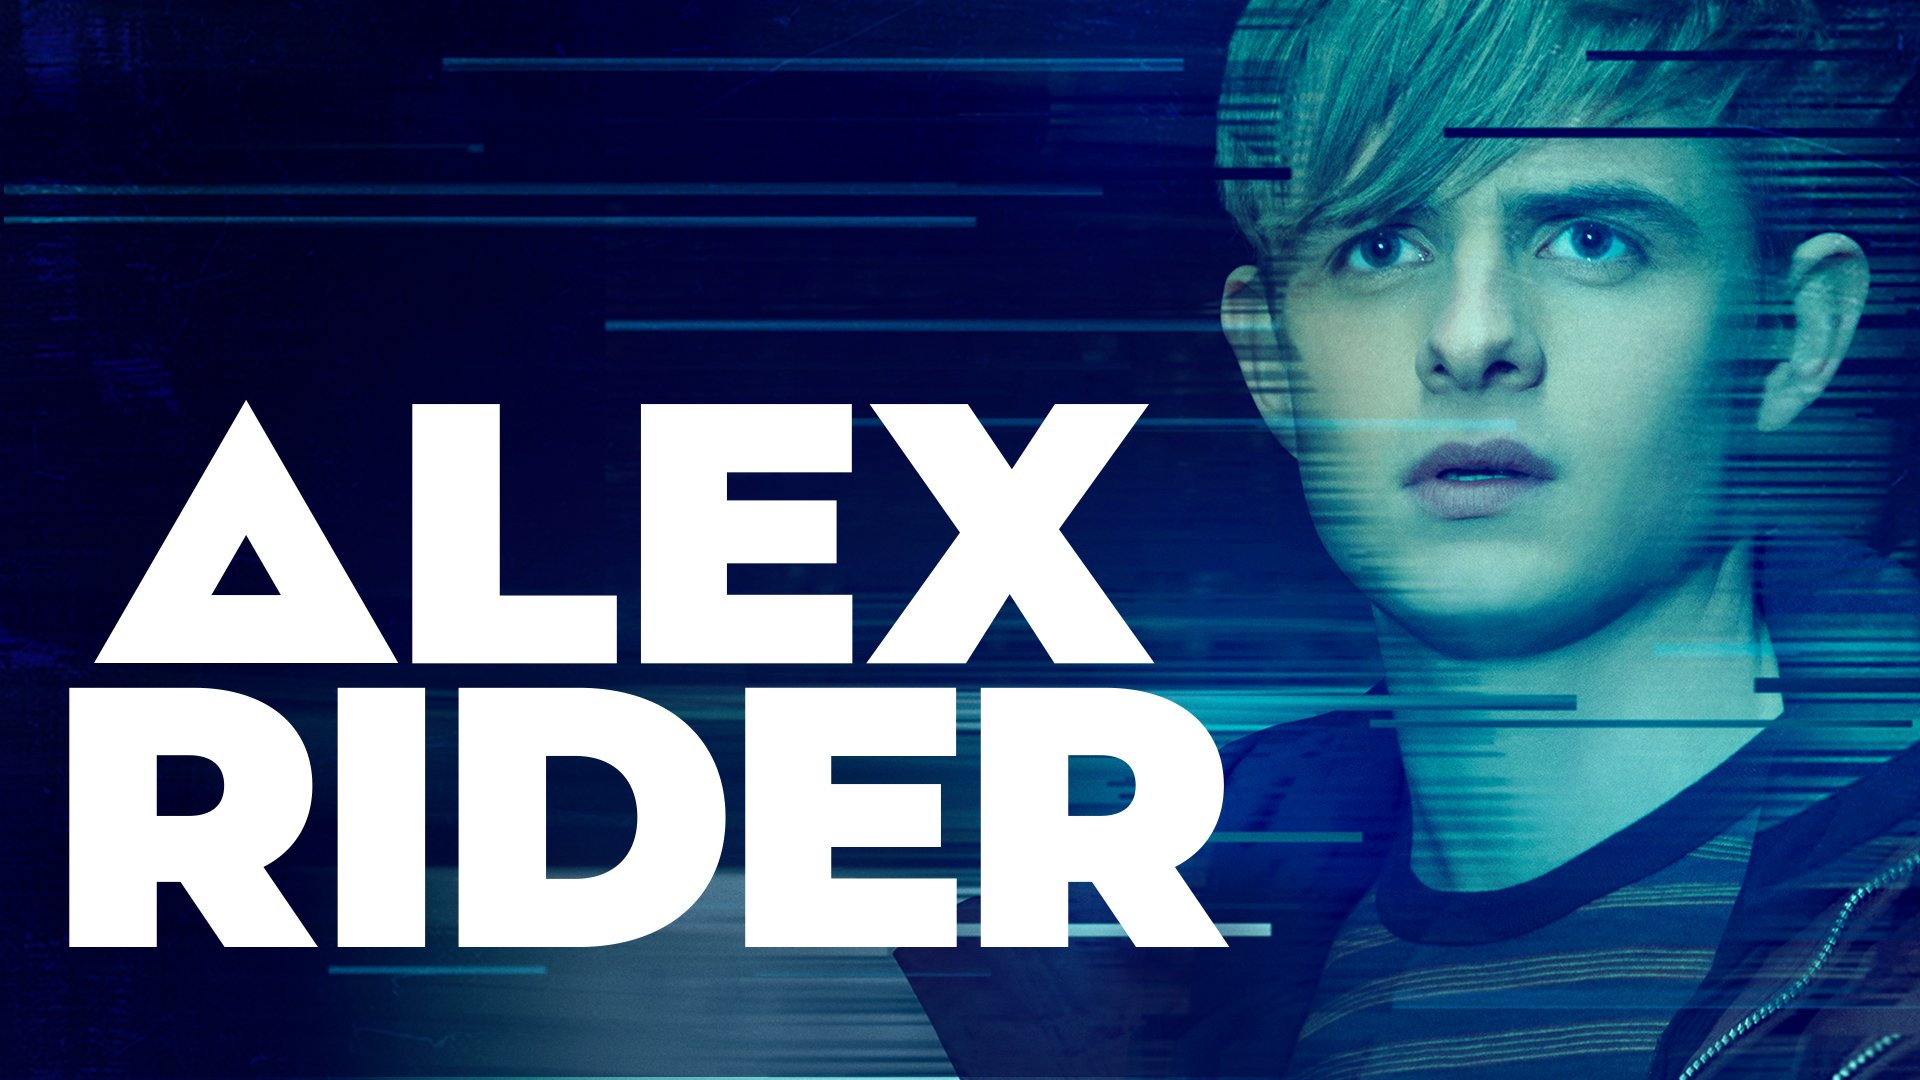 IMDb TV Announces New Original Series ‘Alex Rider’